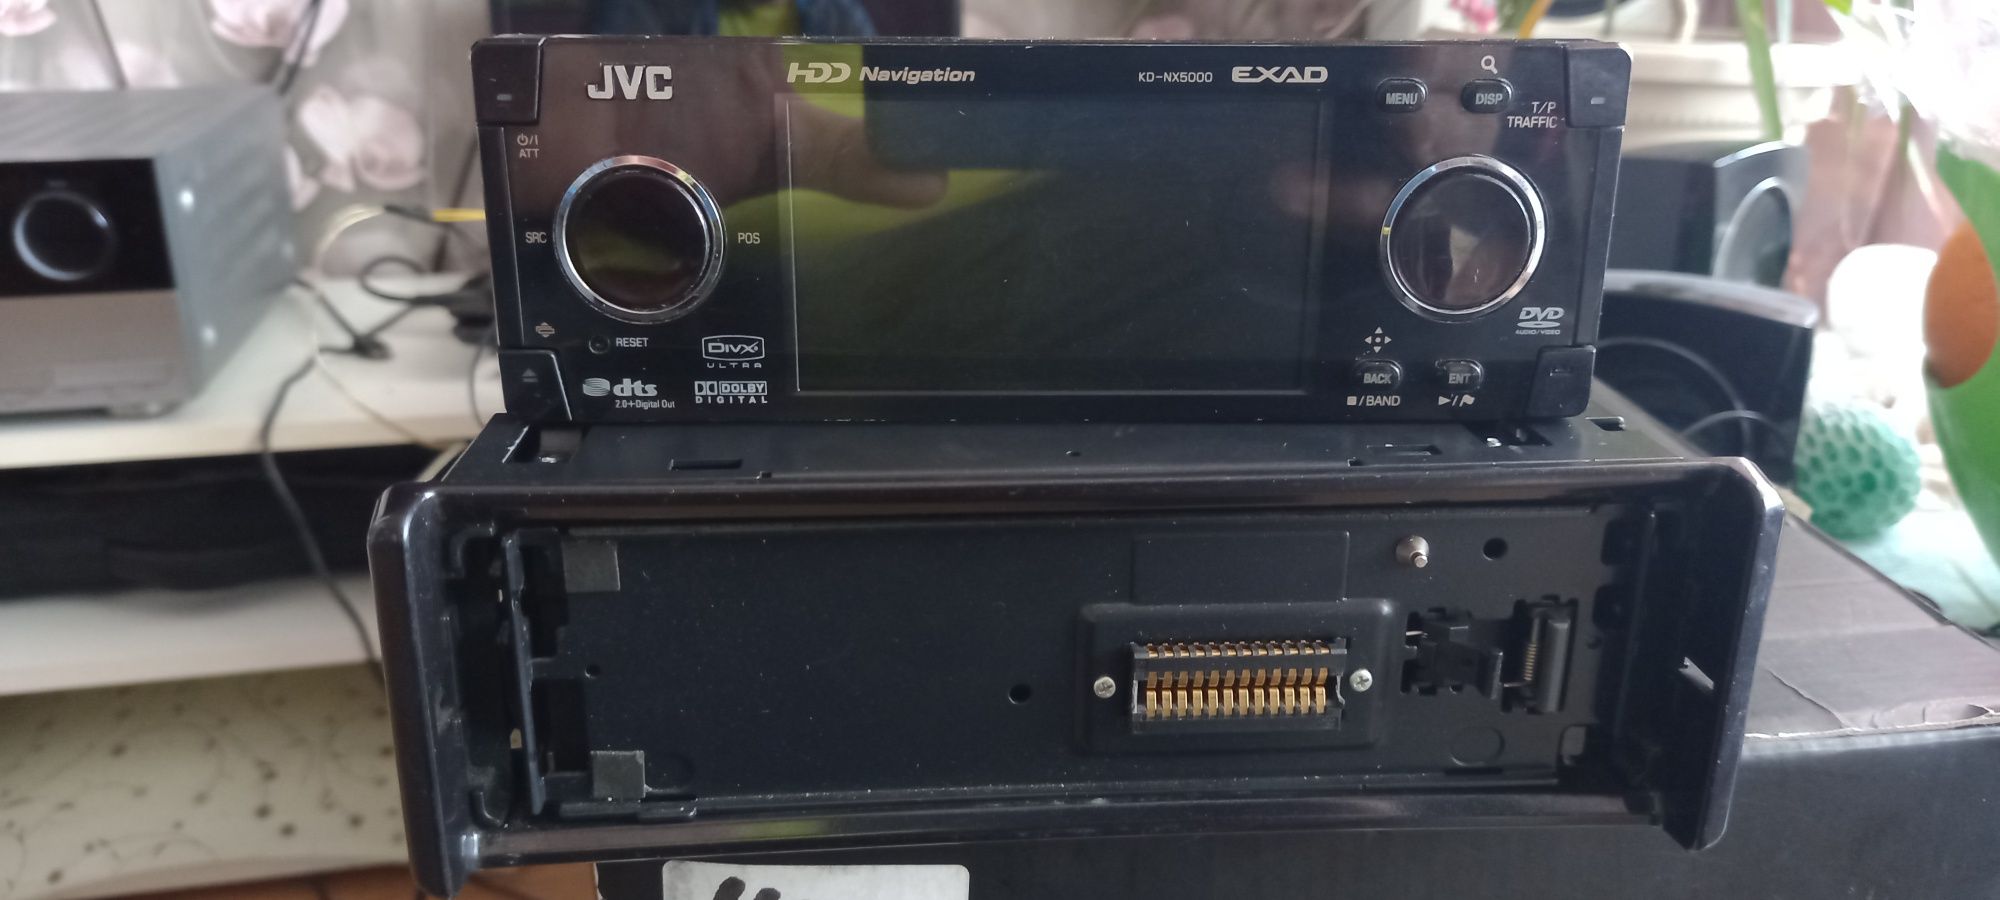 JVC KD-NX5000 dvd